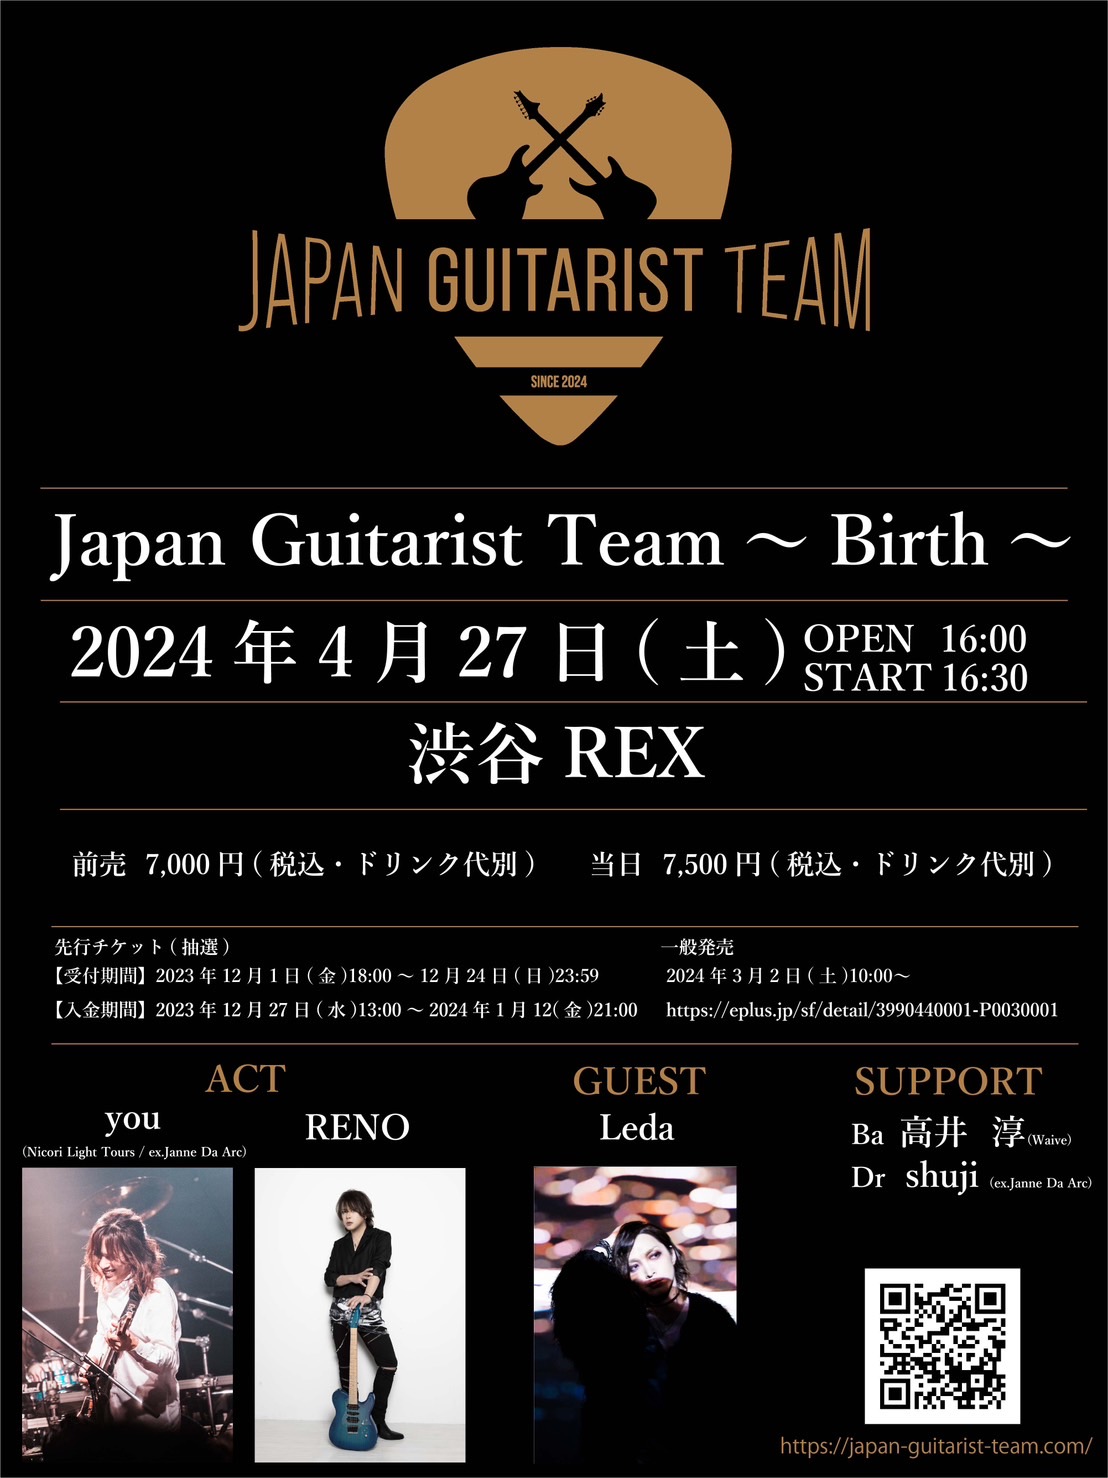 ギターイベント『Japan Guitarist Team〜Birth〜』の告知画像です。